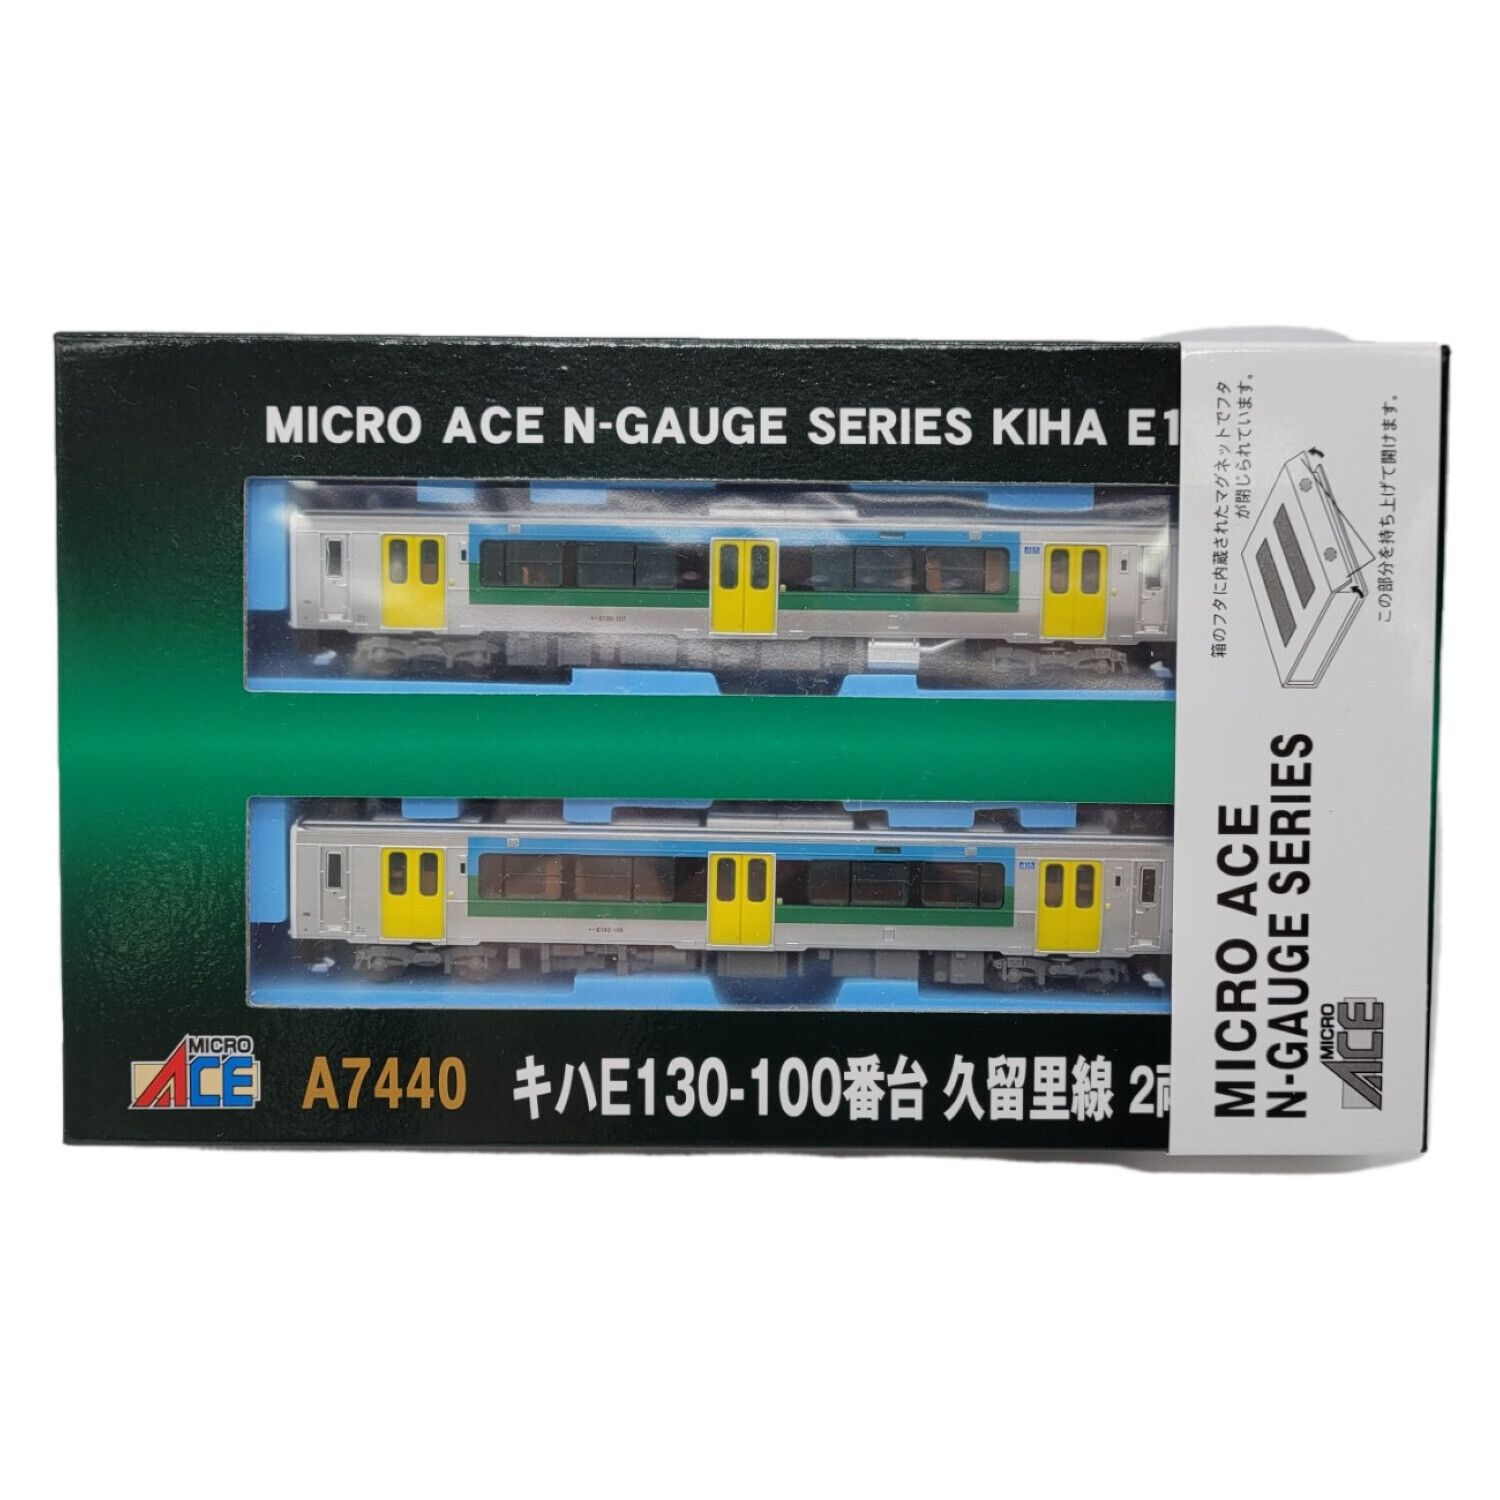 MICRO ACE (マイクロエース) Nゲージ A7440 キハE130-100番台 久留里線 